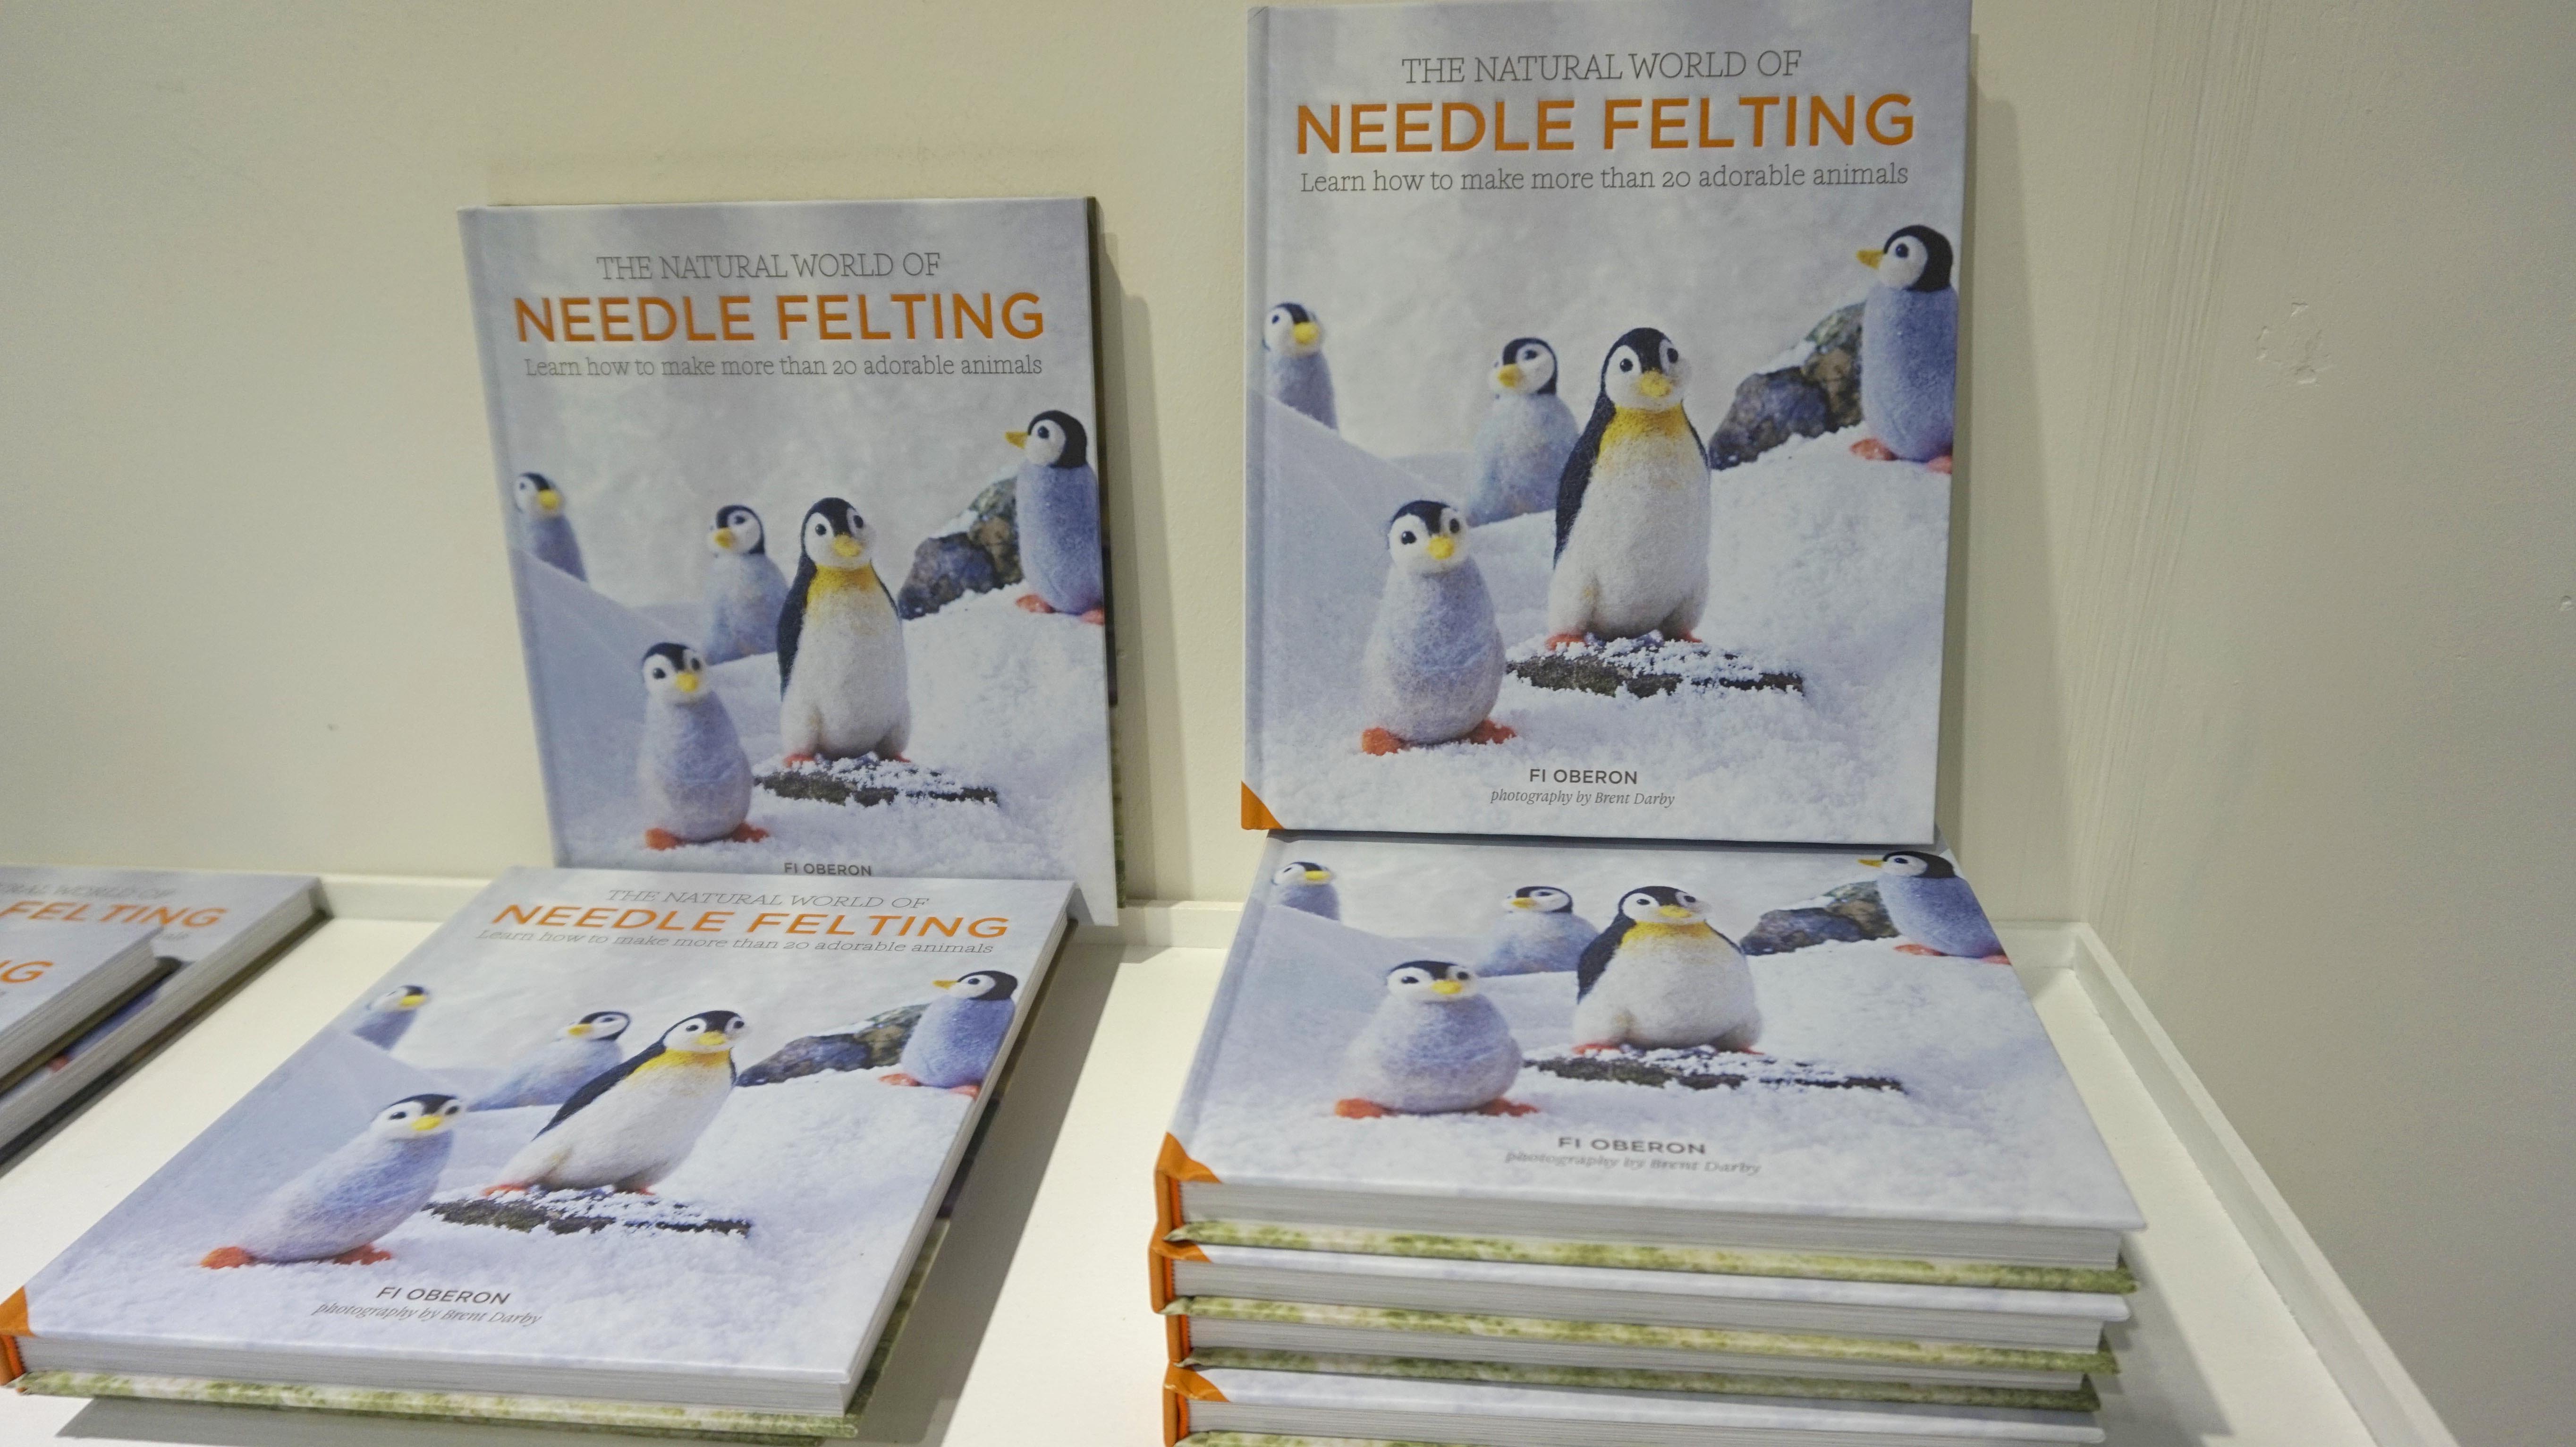 The Natural World of Needle Felting